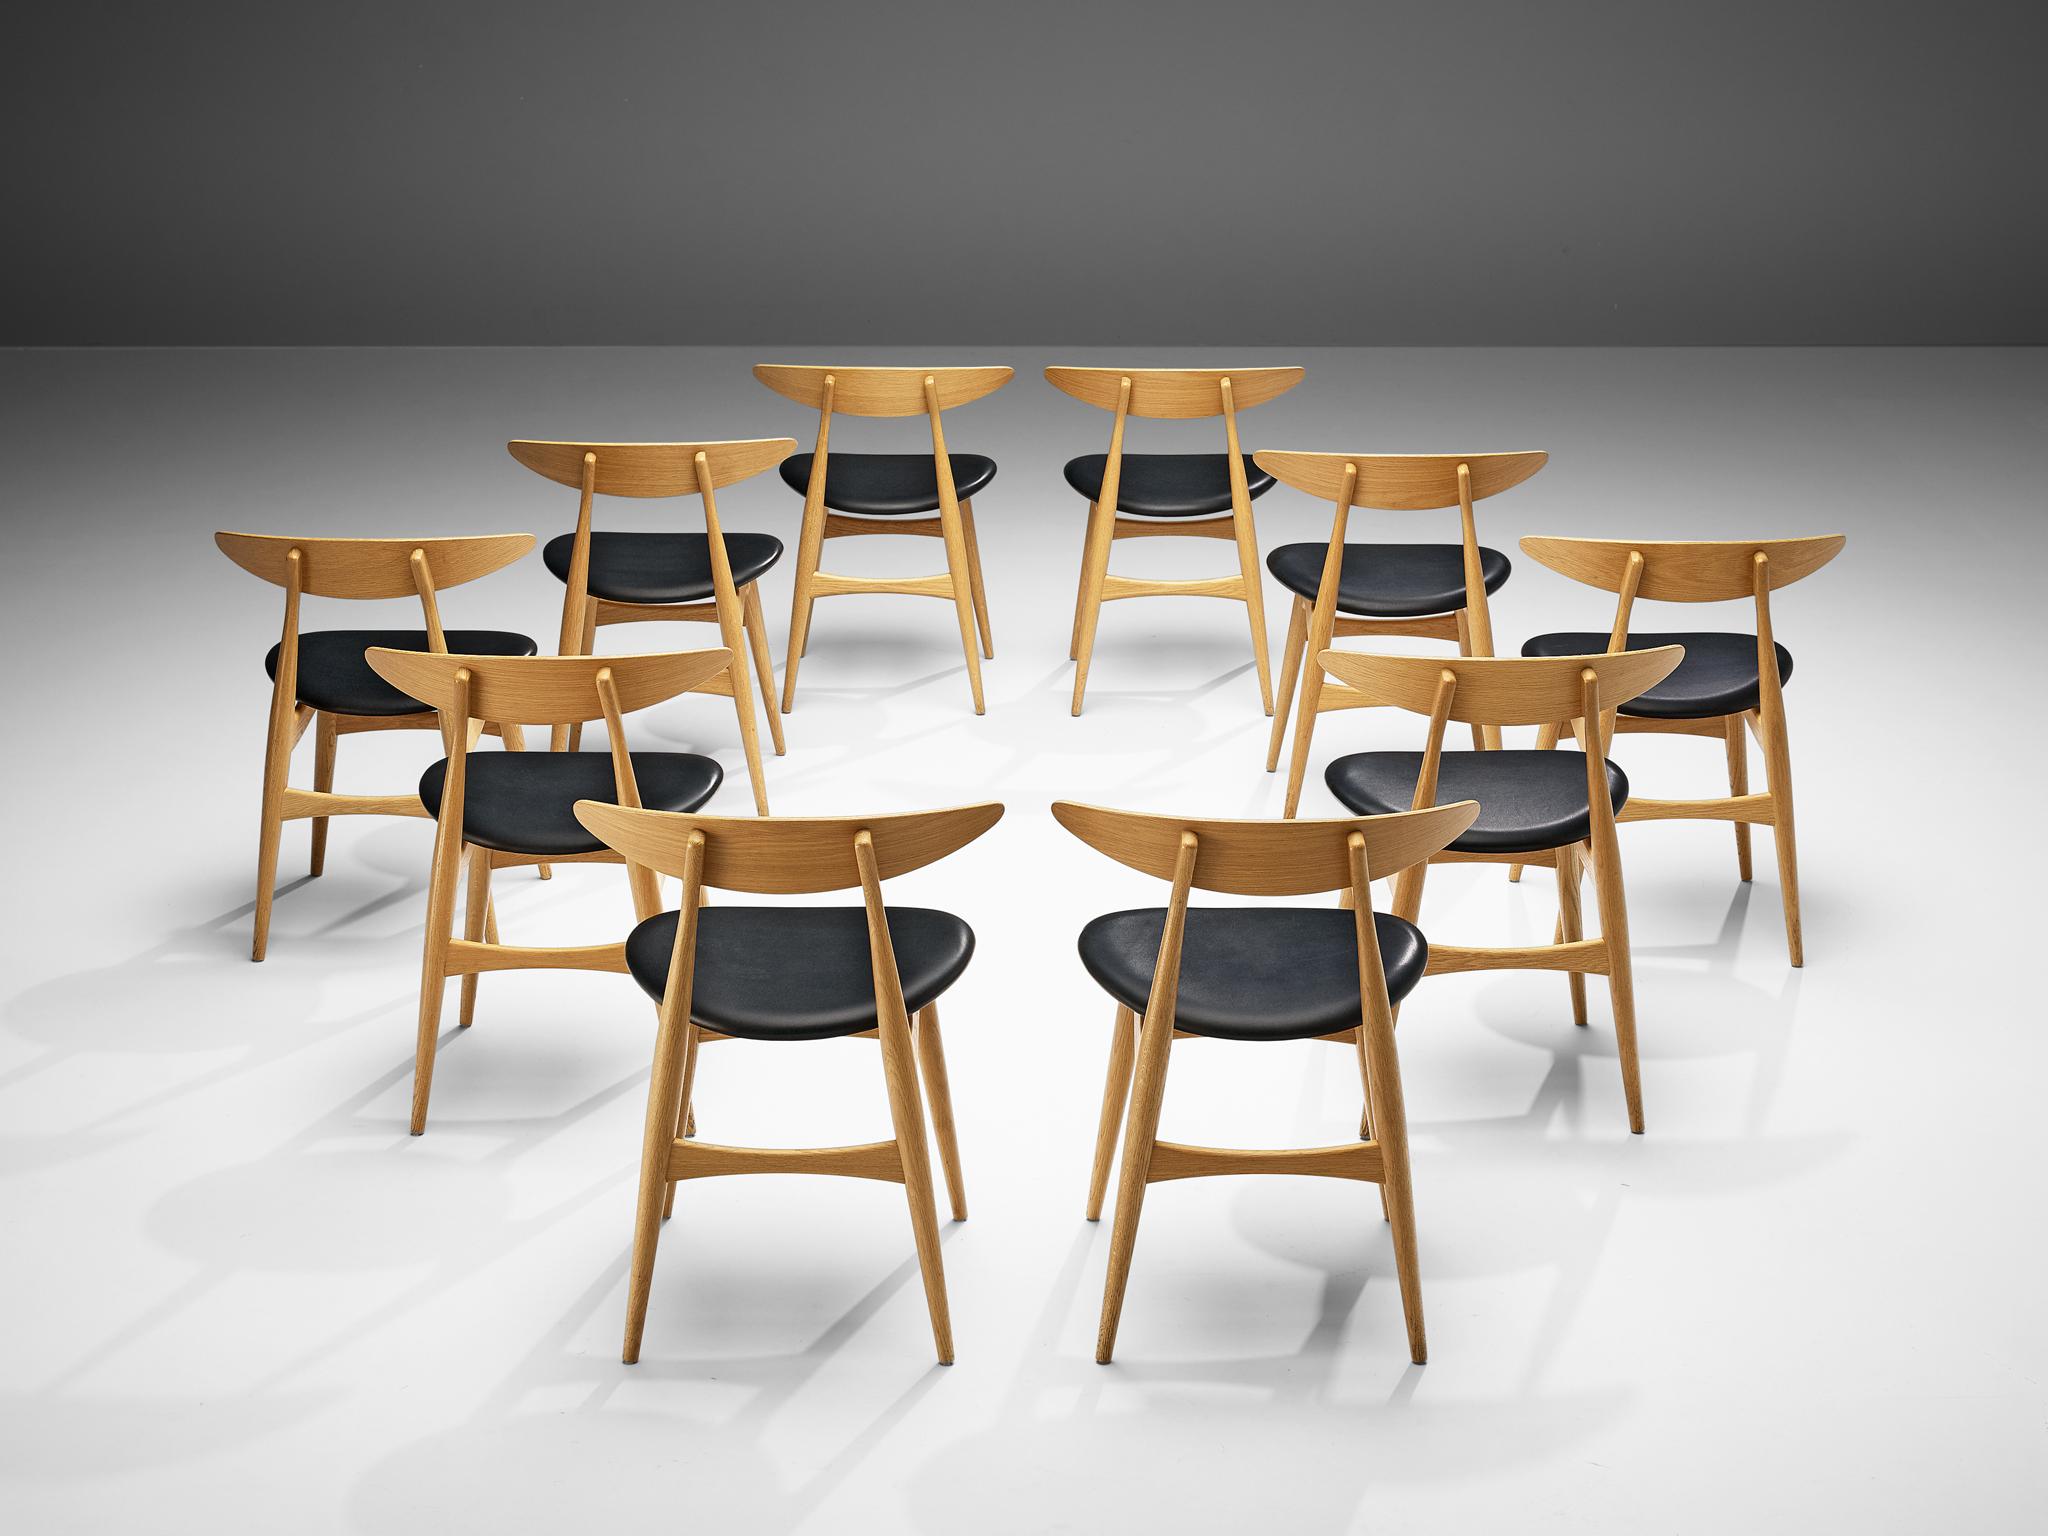 Hans J. Wegner for Carl Hansen & Søn, set of ten dining chairs, model 'CH 33', oak, leather, Denmark, design 1954, later production. 

Set of ten dining chairs designed by Danish designer Hans J. Wegner. These chairs are upholstered in black